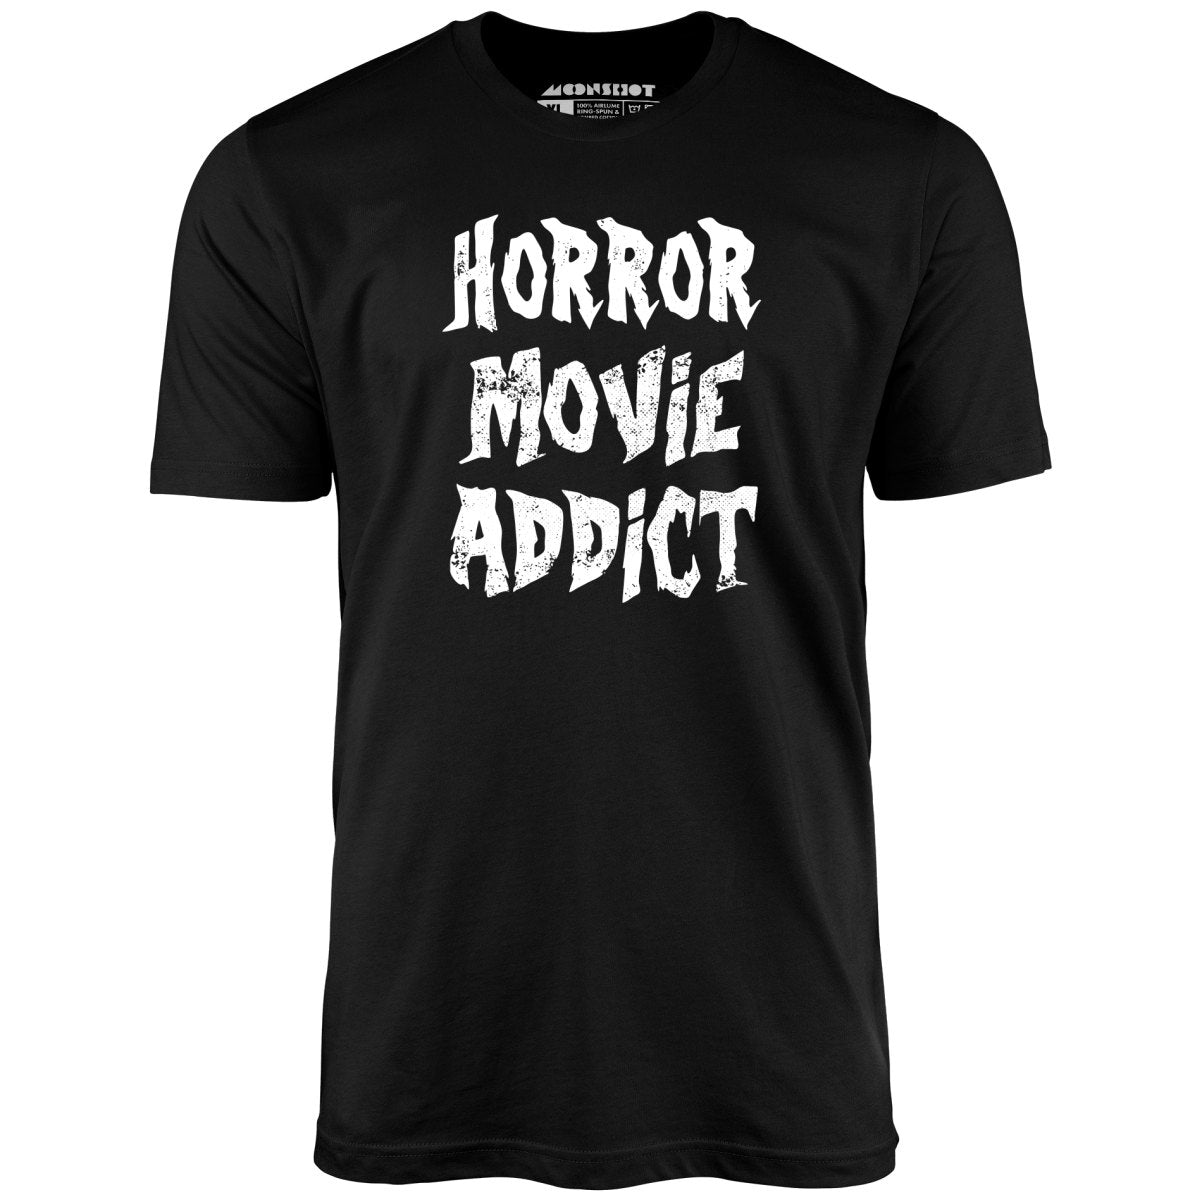 Horror Movie Addict - Unisex T-Shirt